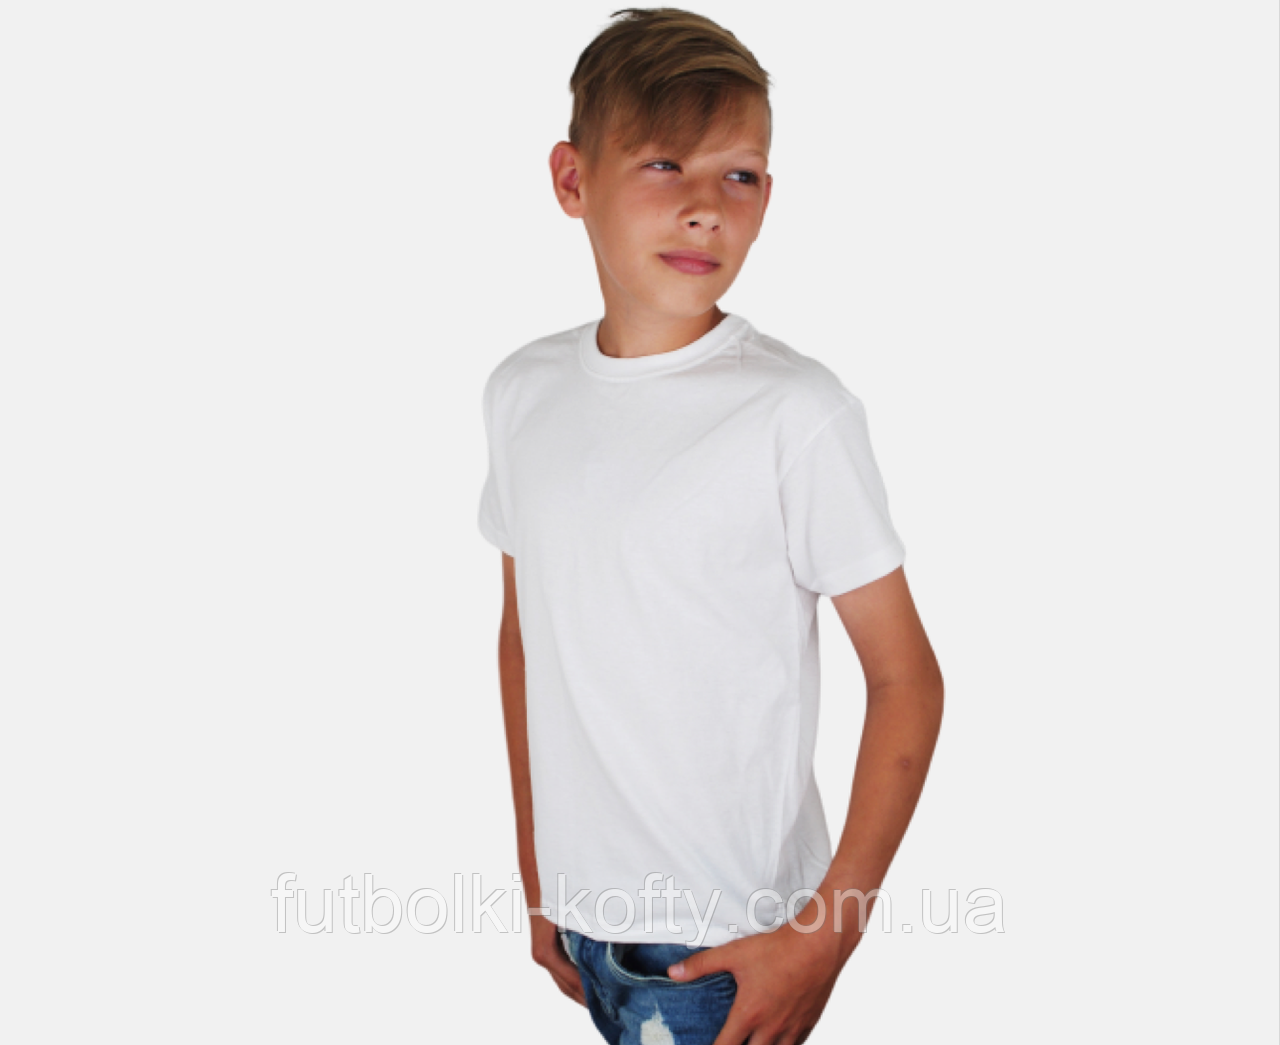 Дитяча Класична футболка для хлопчиків Біла Fruit of the loom 61-033-30 12-13